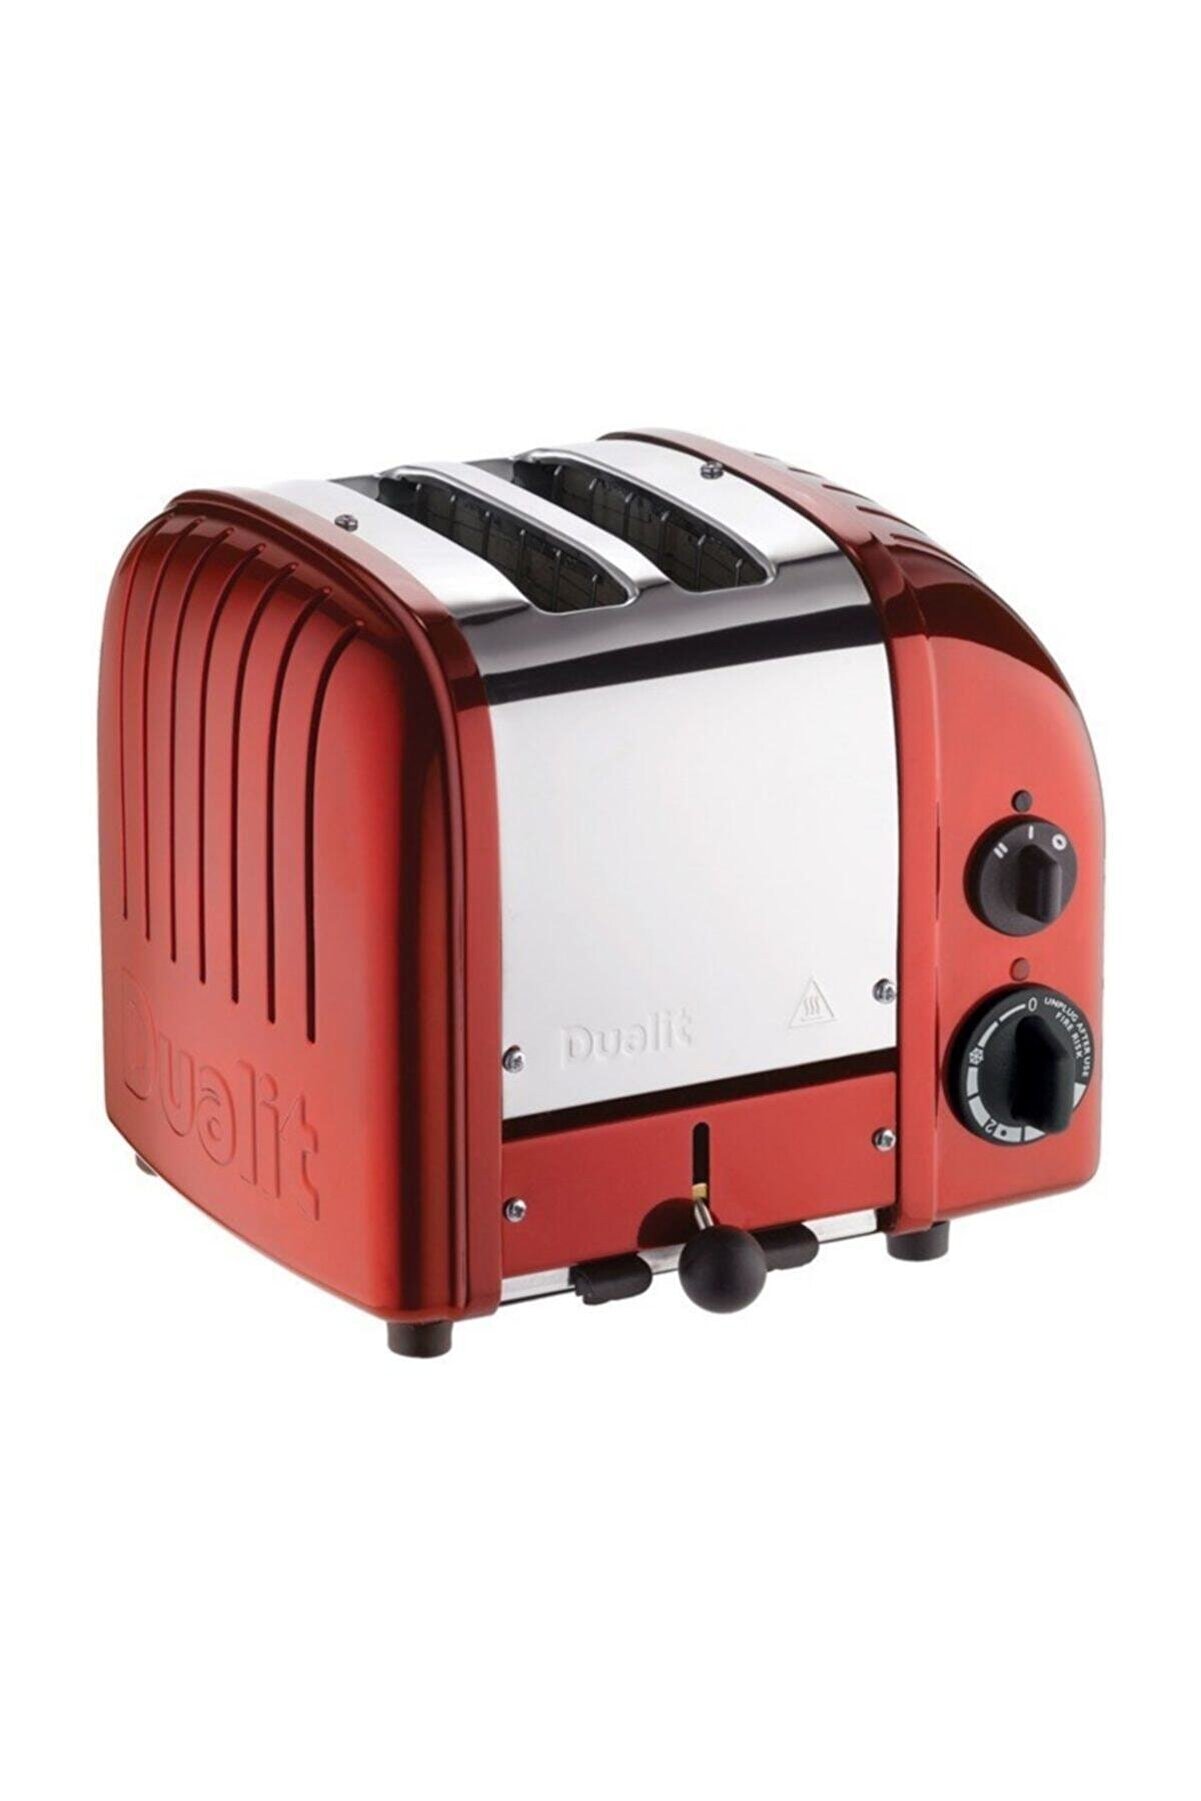 Dualit 2 Hazneli Classic 27031 El Yapımı Kırmızı Rengi Ekmek Kızartma Makinesi